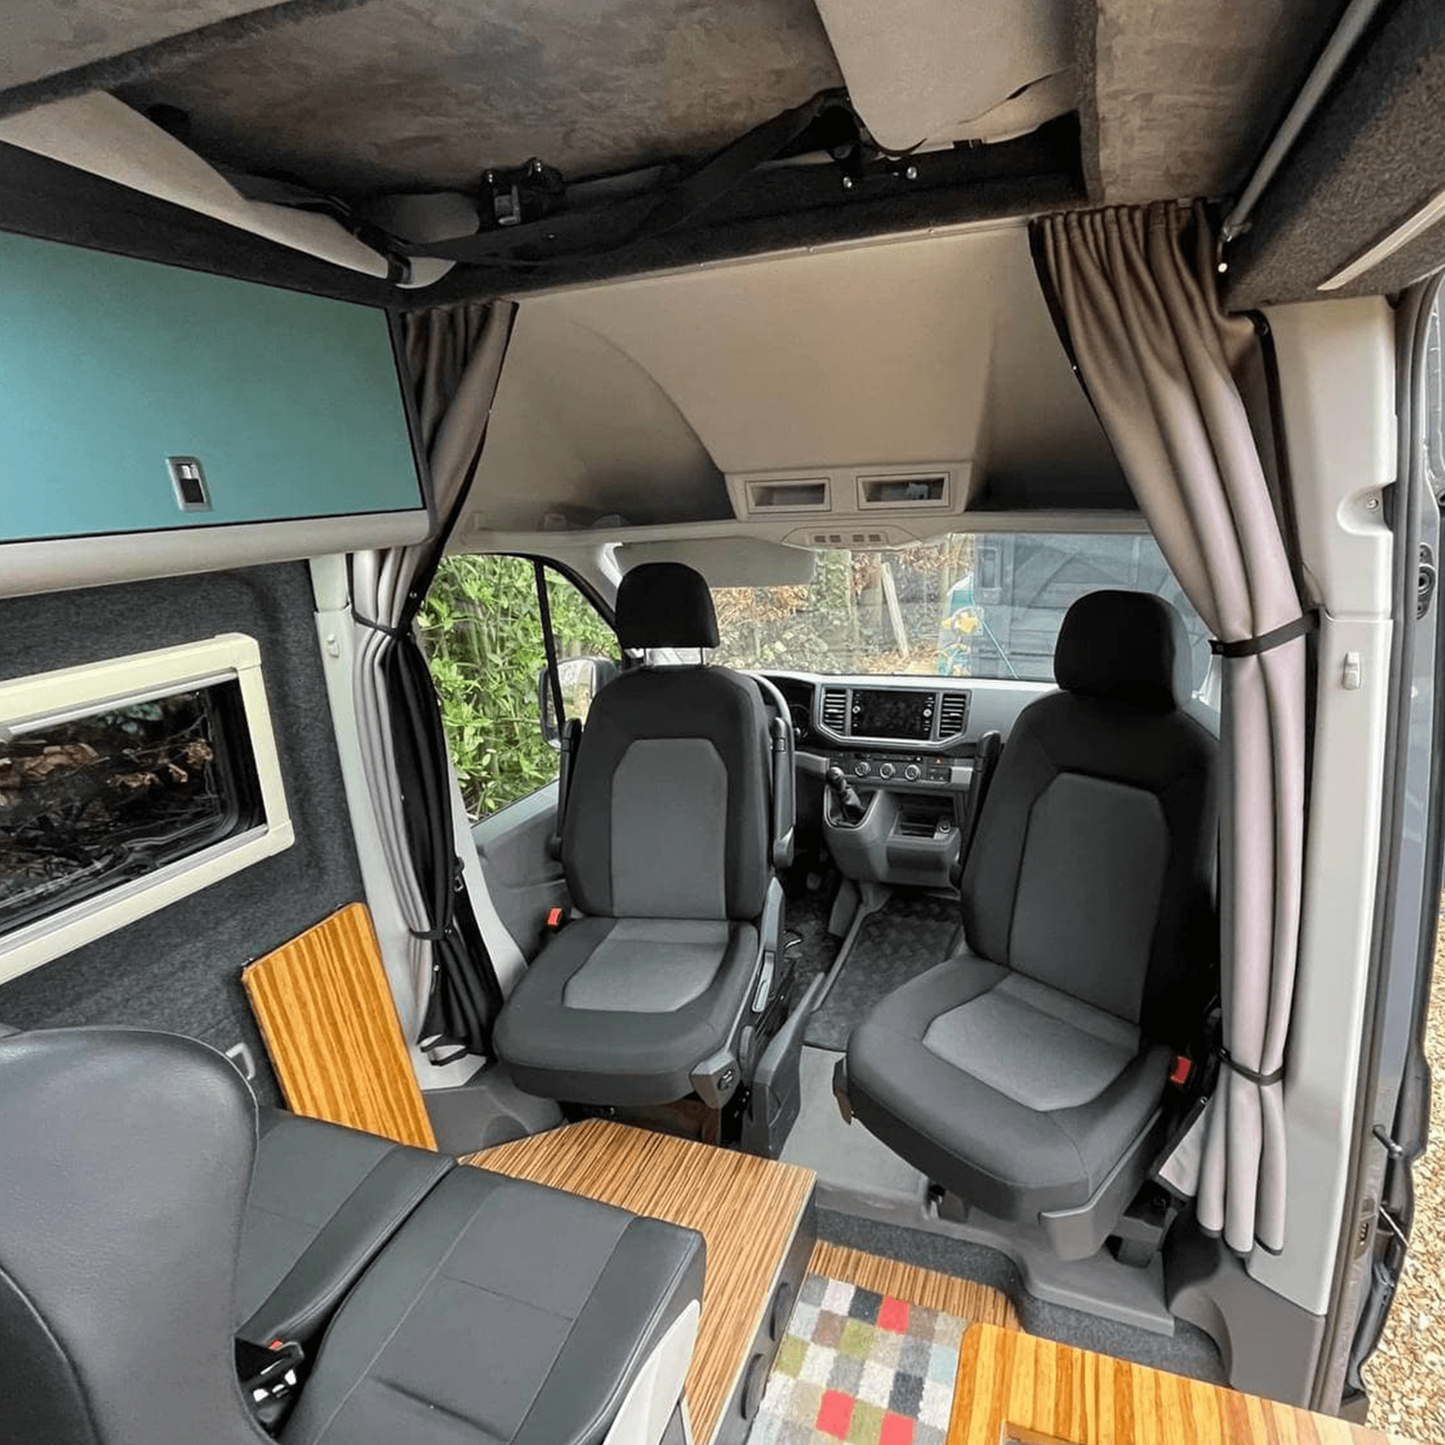 MAN TGE / Kit tenda divisoria New Crafter Cab conversione camper